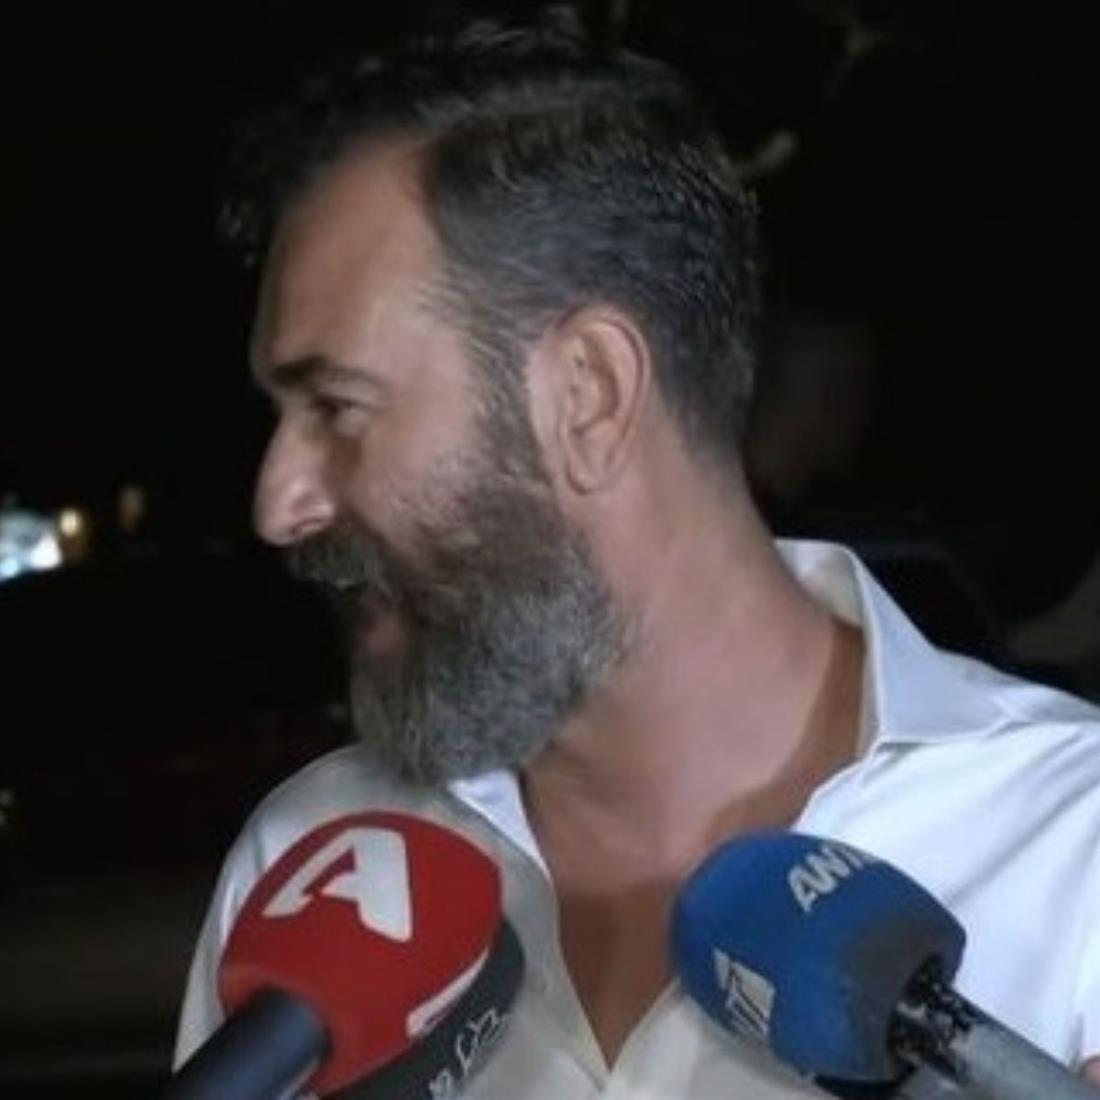 Άγγελος Μπράτης: Η αντίδραση όταν έμαθε on camera για το κόμμα ΝΙΚΗ και το εξώδικο στο Pride της Θεσσαλονίκης